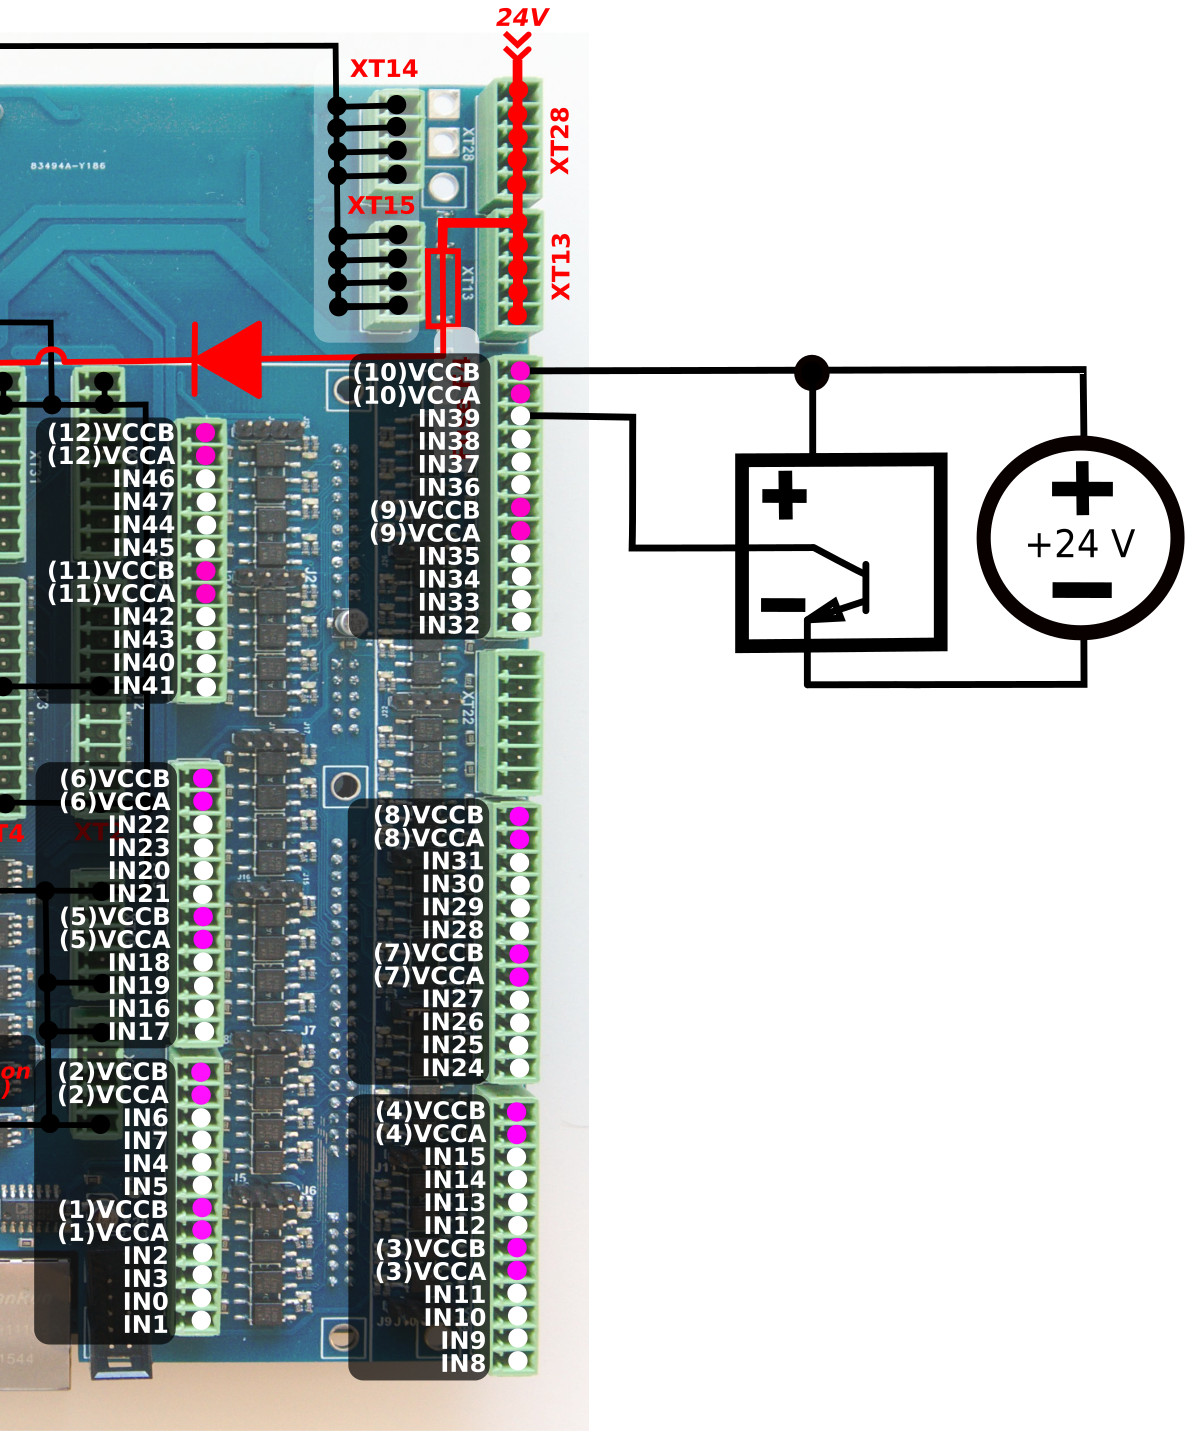 et10-connection-inputs-002-key-05-npn-02.jpg